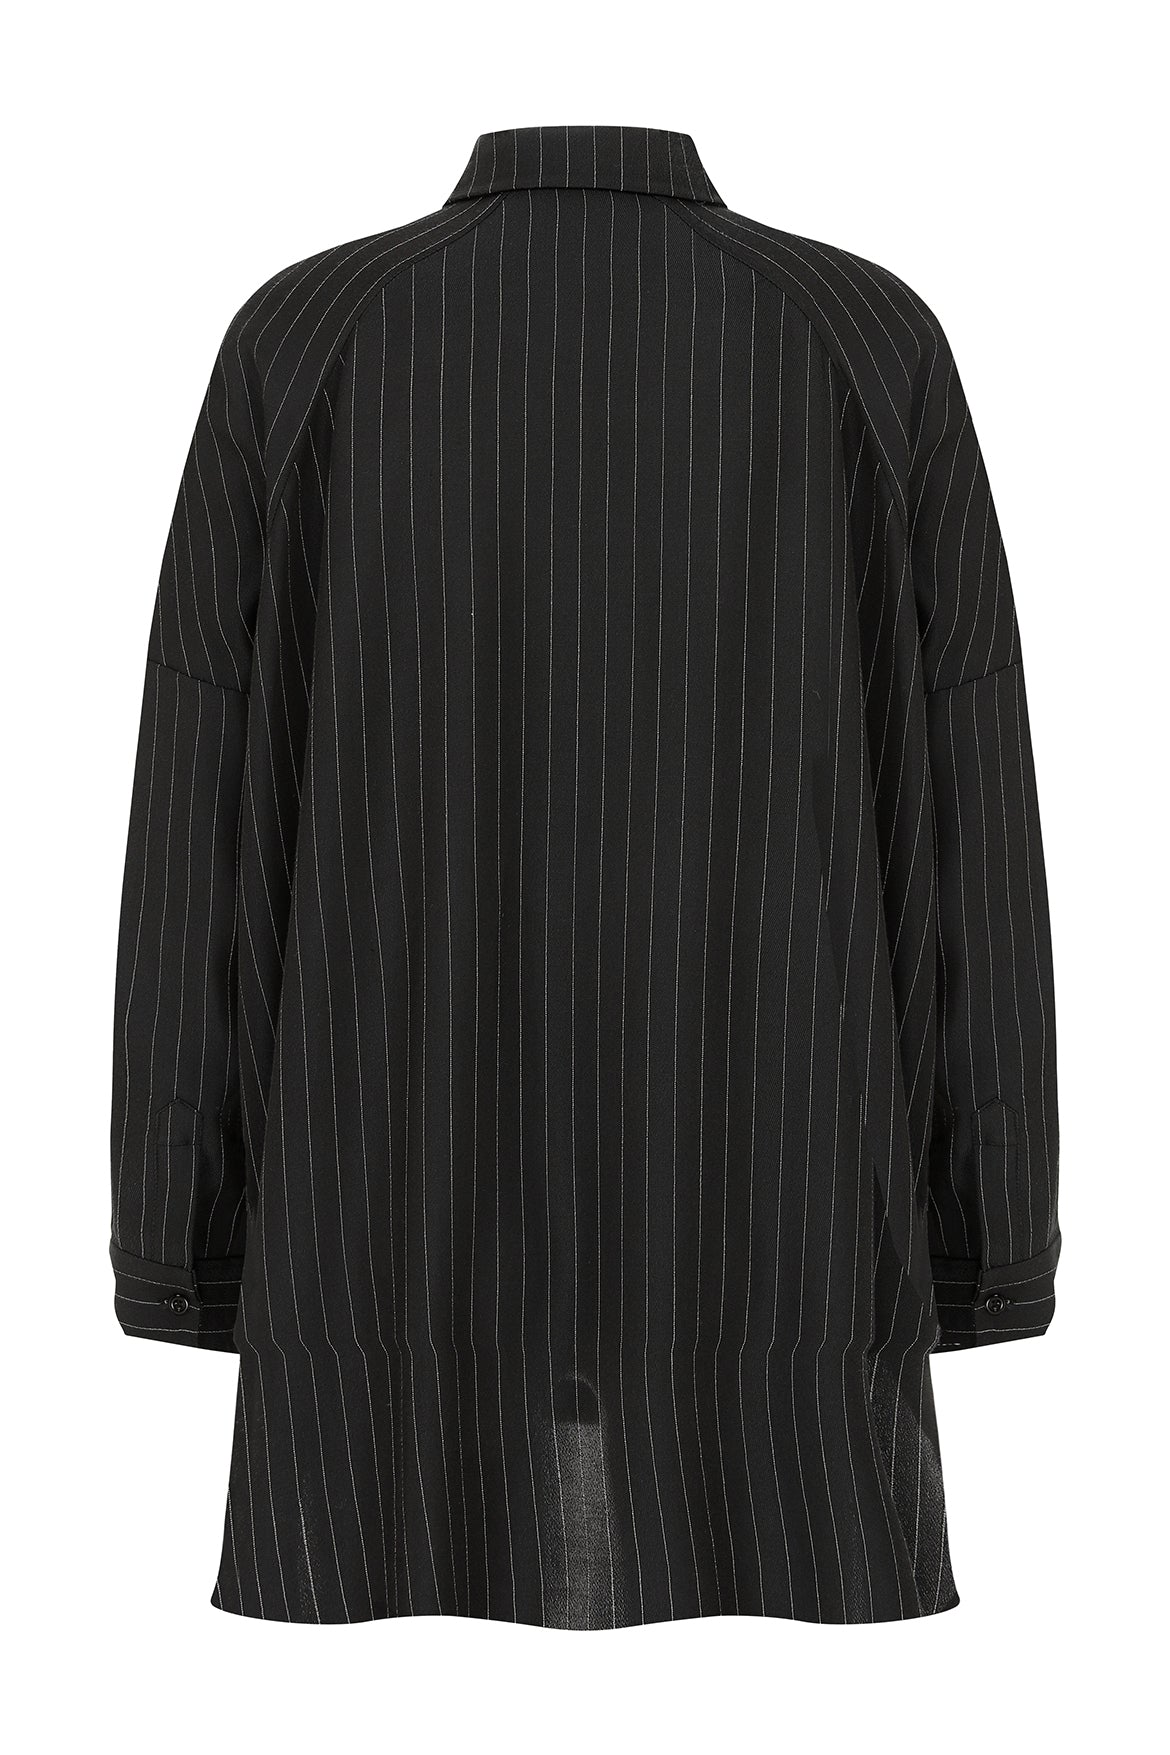 Off Shoulder Striped Black Kutnu Shirt